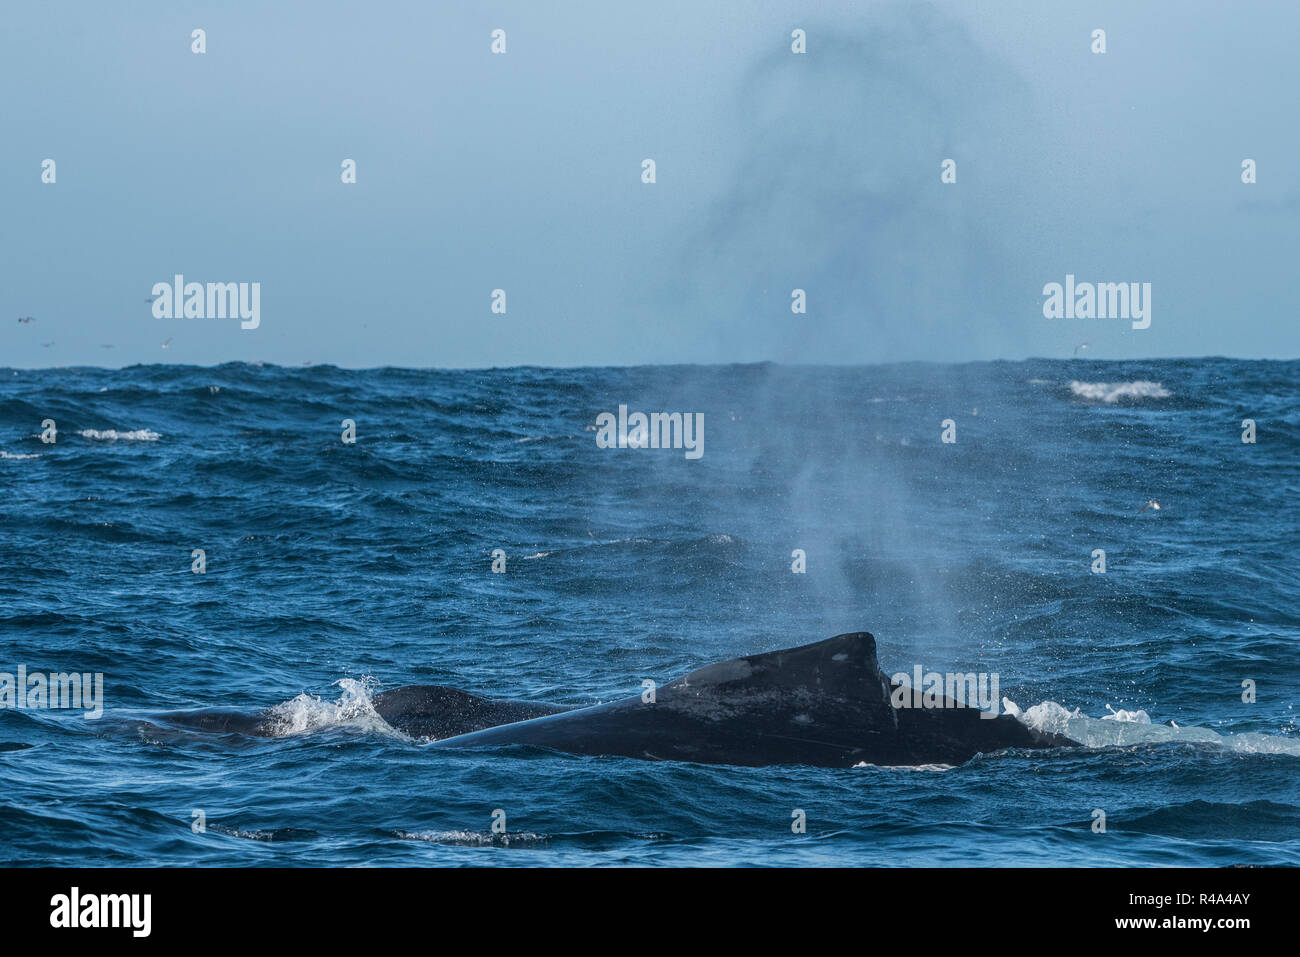 Une baleine à bosse et les surfaces brièvement jusqu'envoie un nuage de pulvérisation dans les îles Farallon National Marine Sanctuary au large de la côte de San Francisco. Banque D'Images